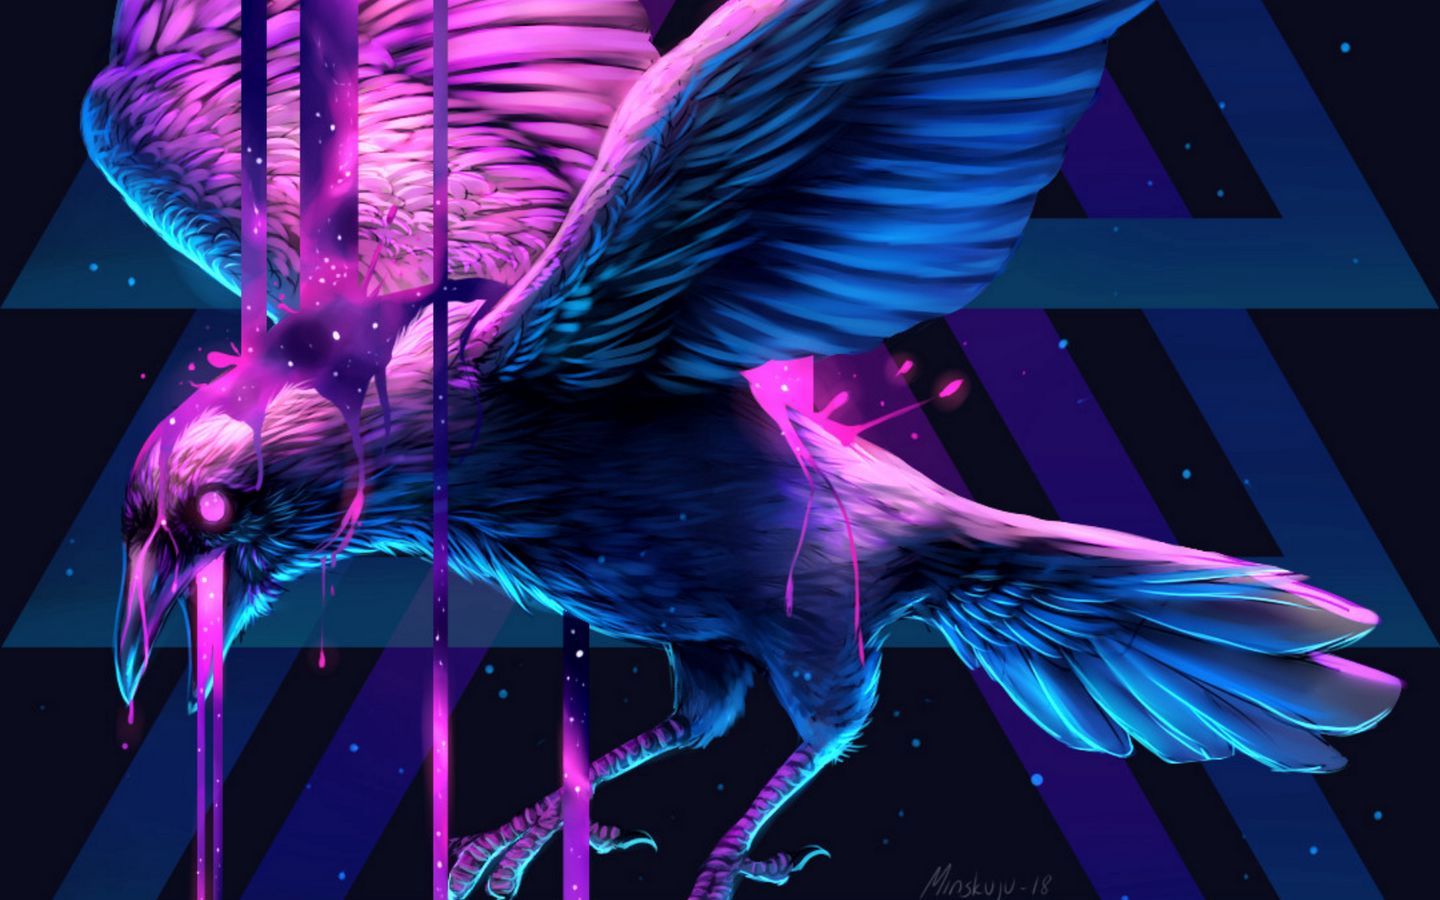 Download wallpaper 1440x900 raven, bird, art, triangle, paint